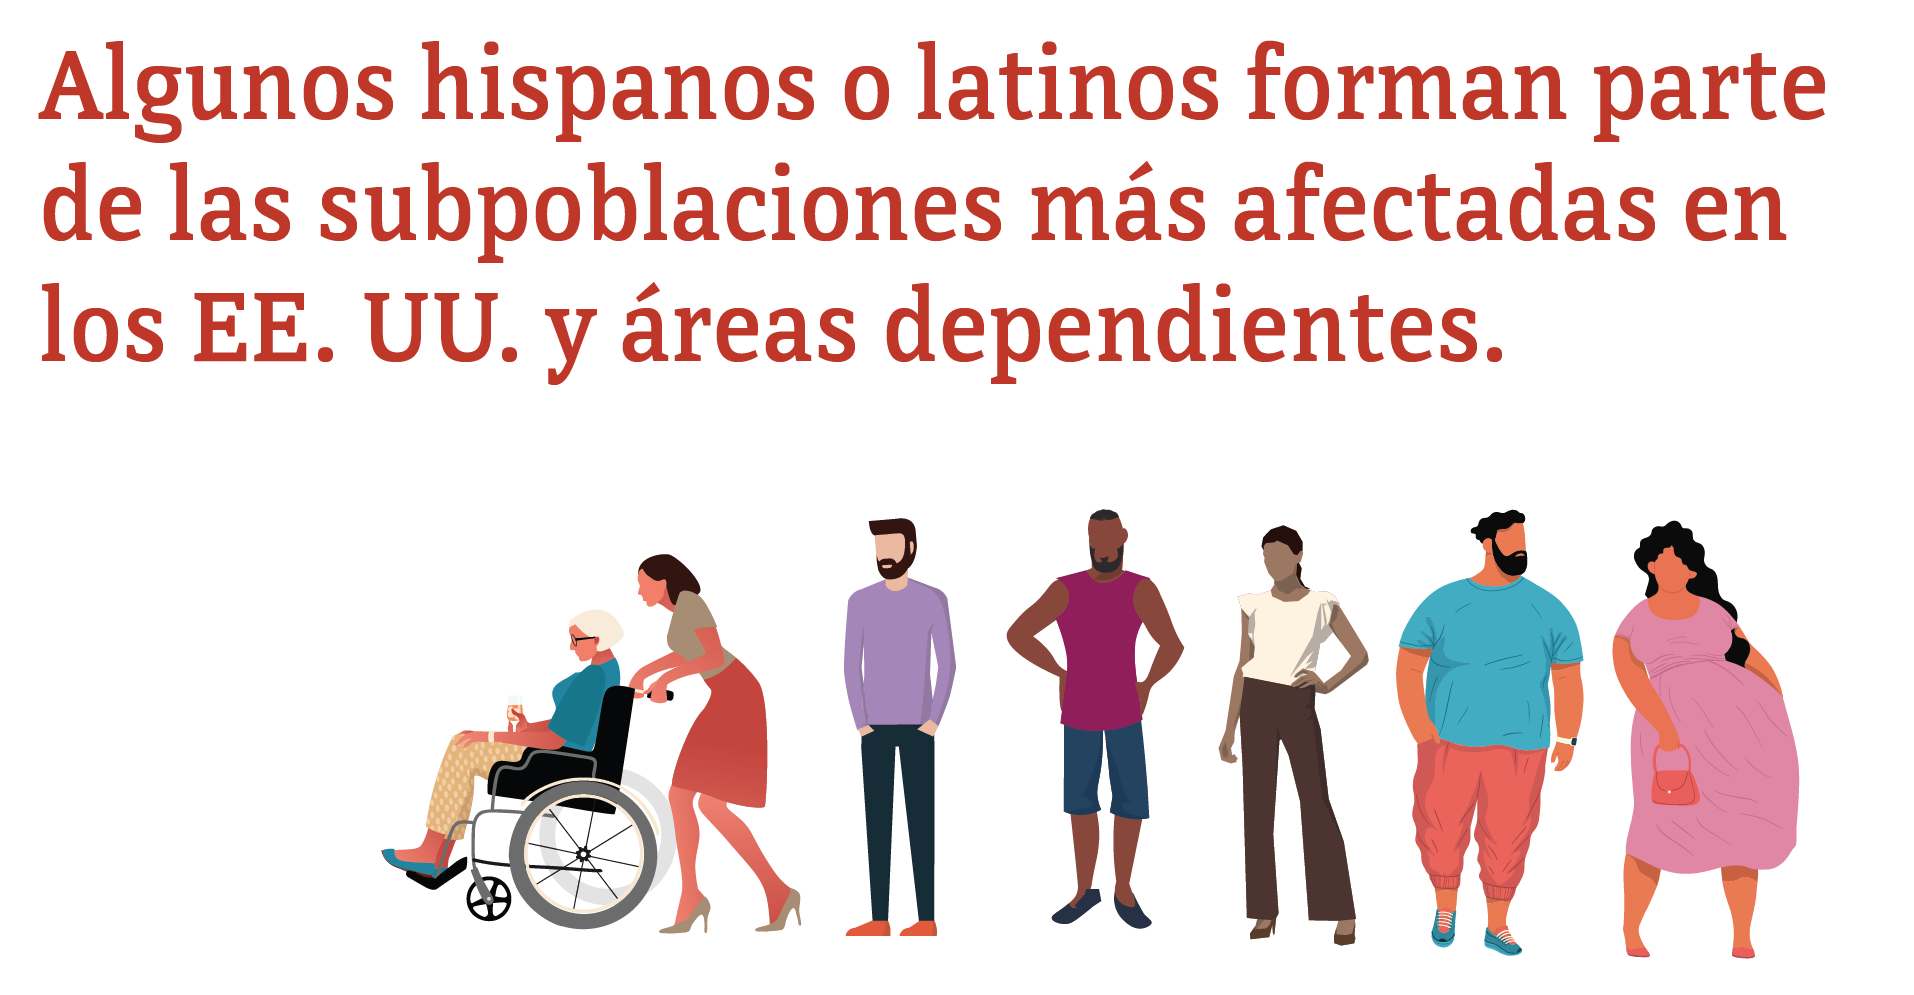 Algunos hispanos o latinos forman parte de las subpoblaciones más afectadas en los EE. UU. y áreas dependientes.